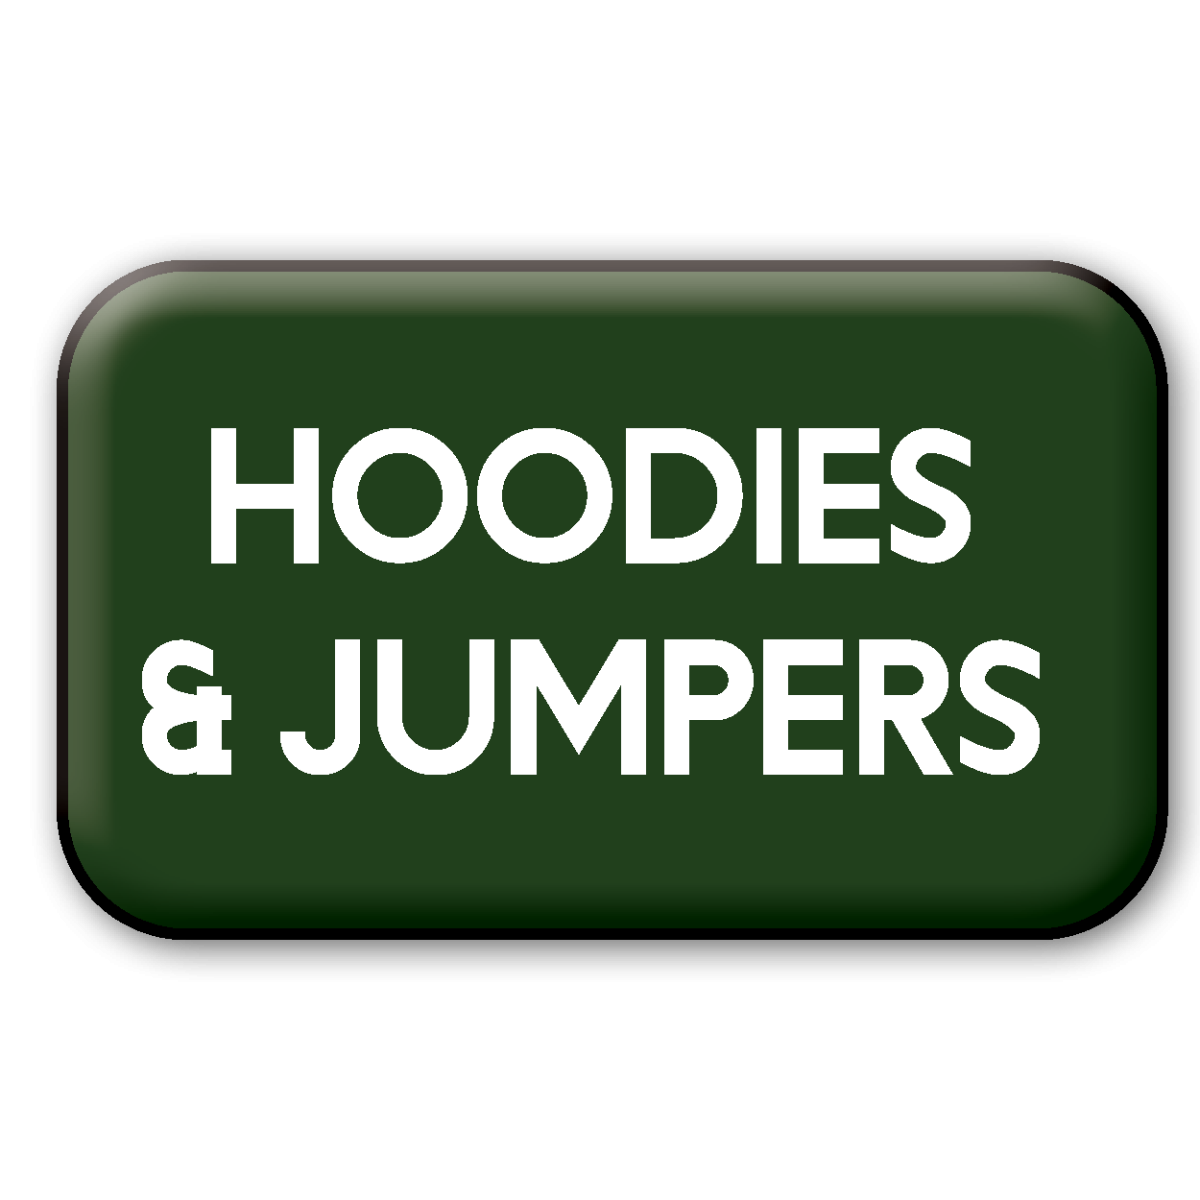 Shop Kids Hoodies & Jumpers